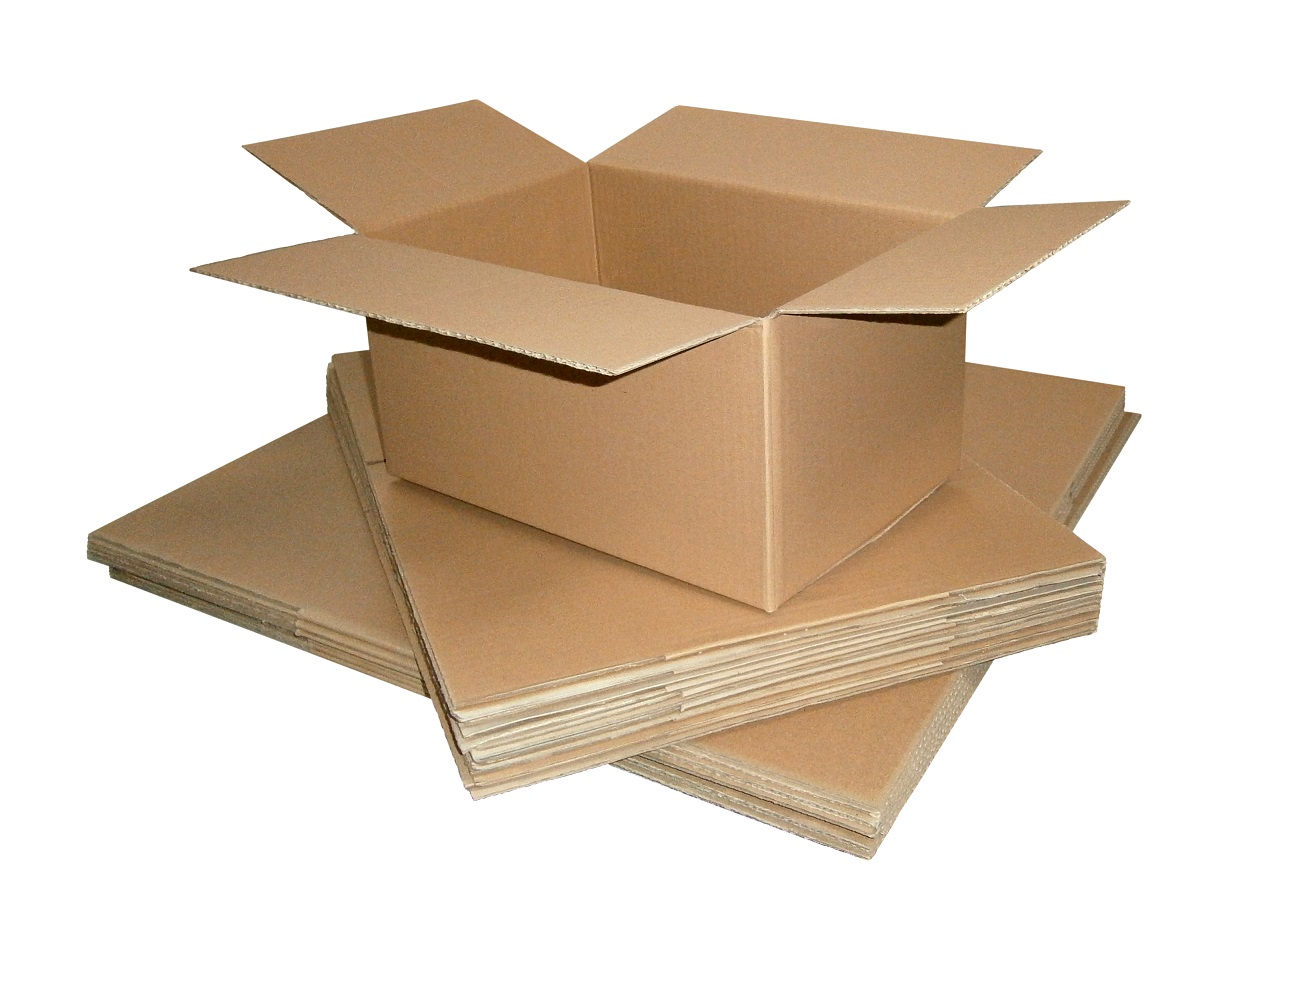  Carton  box  with flaps 3VVL 400x400x400 mm L x W x H 